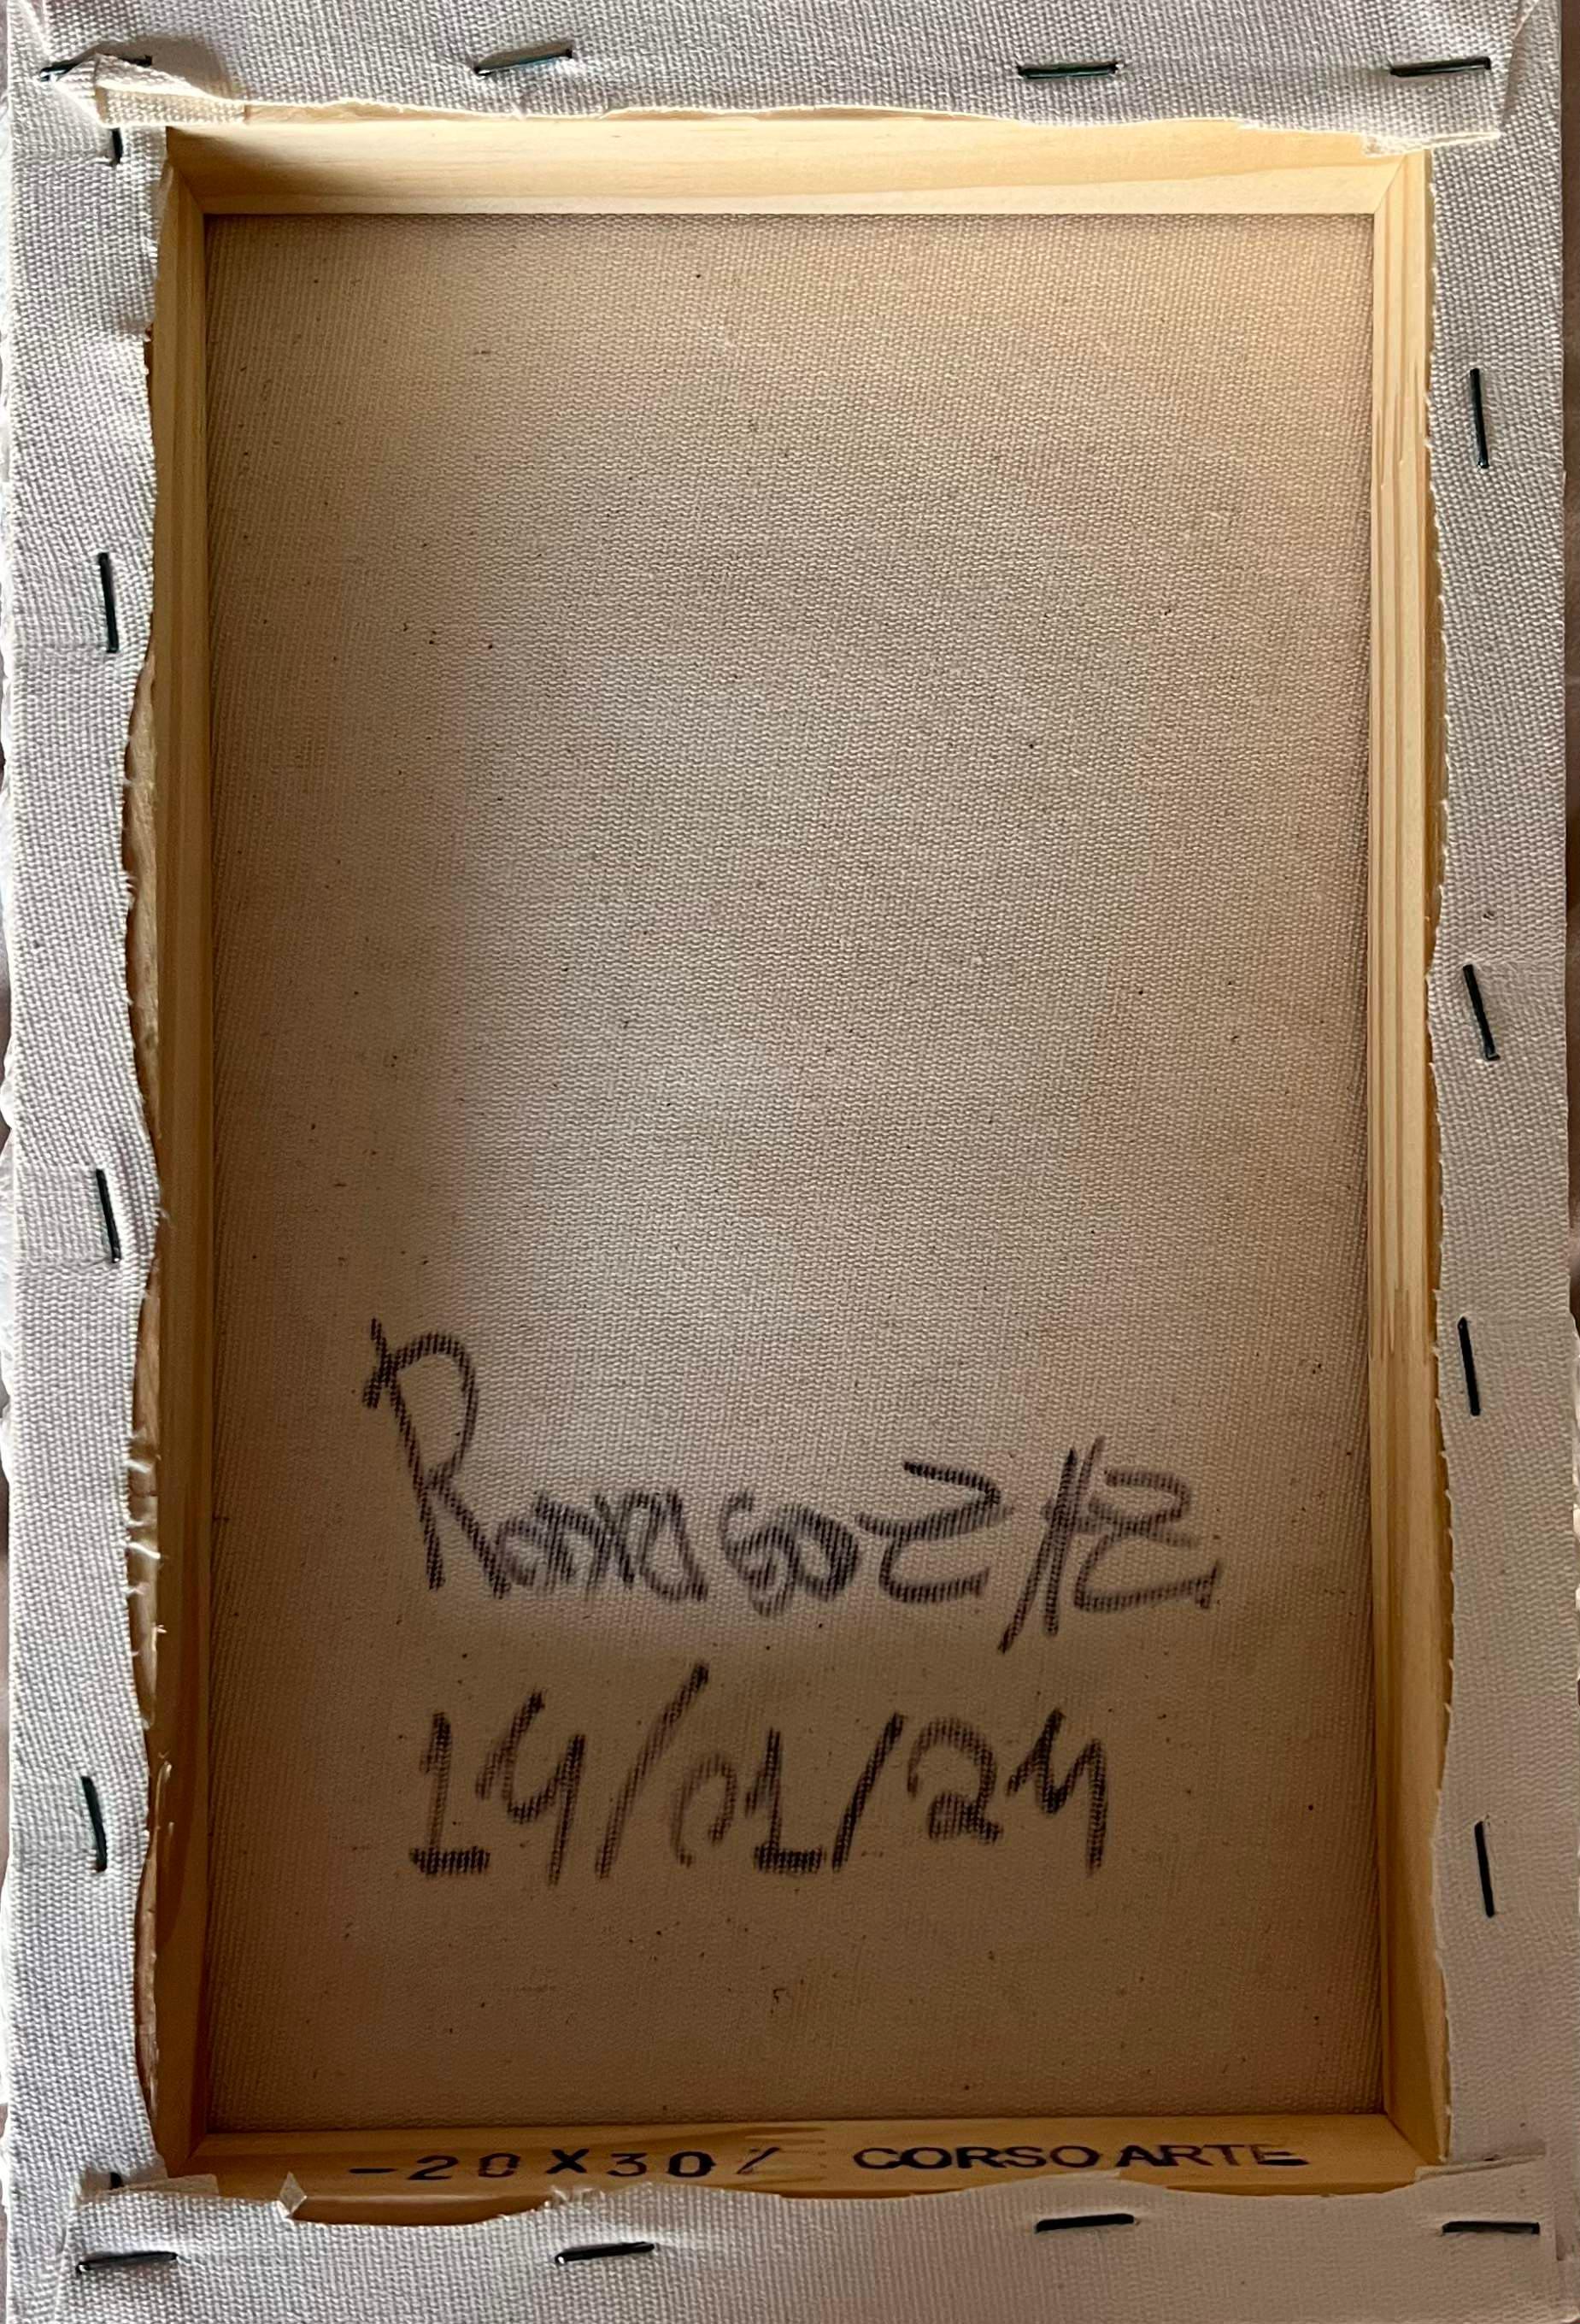 Ragisména Serie Weiß M5, 2024  von Rodrigo Zampol
Aus der Ragisména-Serie
Gips auf Leinwand
Abmessungen: 30 cm H x 20 cm B
Gewicht: 3 kg
Einzigartiges Stück

Signiert auf der Rückseite
Das Stück hat ein Echtheitszertifikat

Ragisména-Reihe
Die Serie